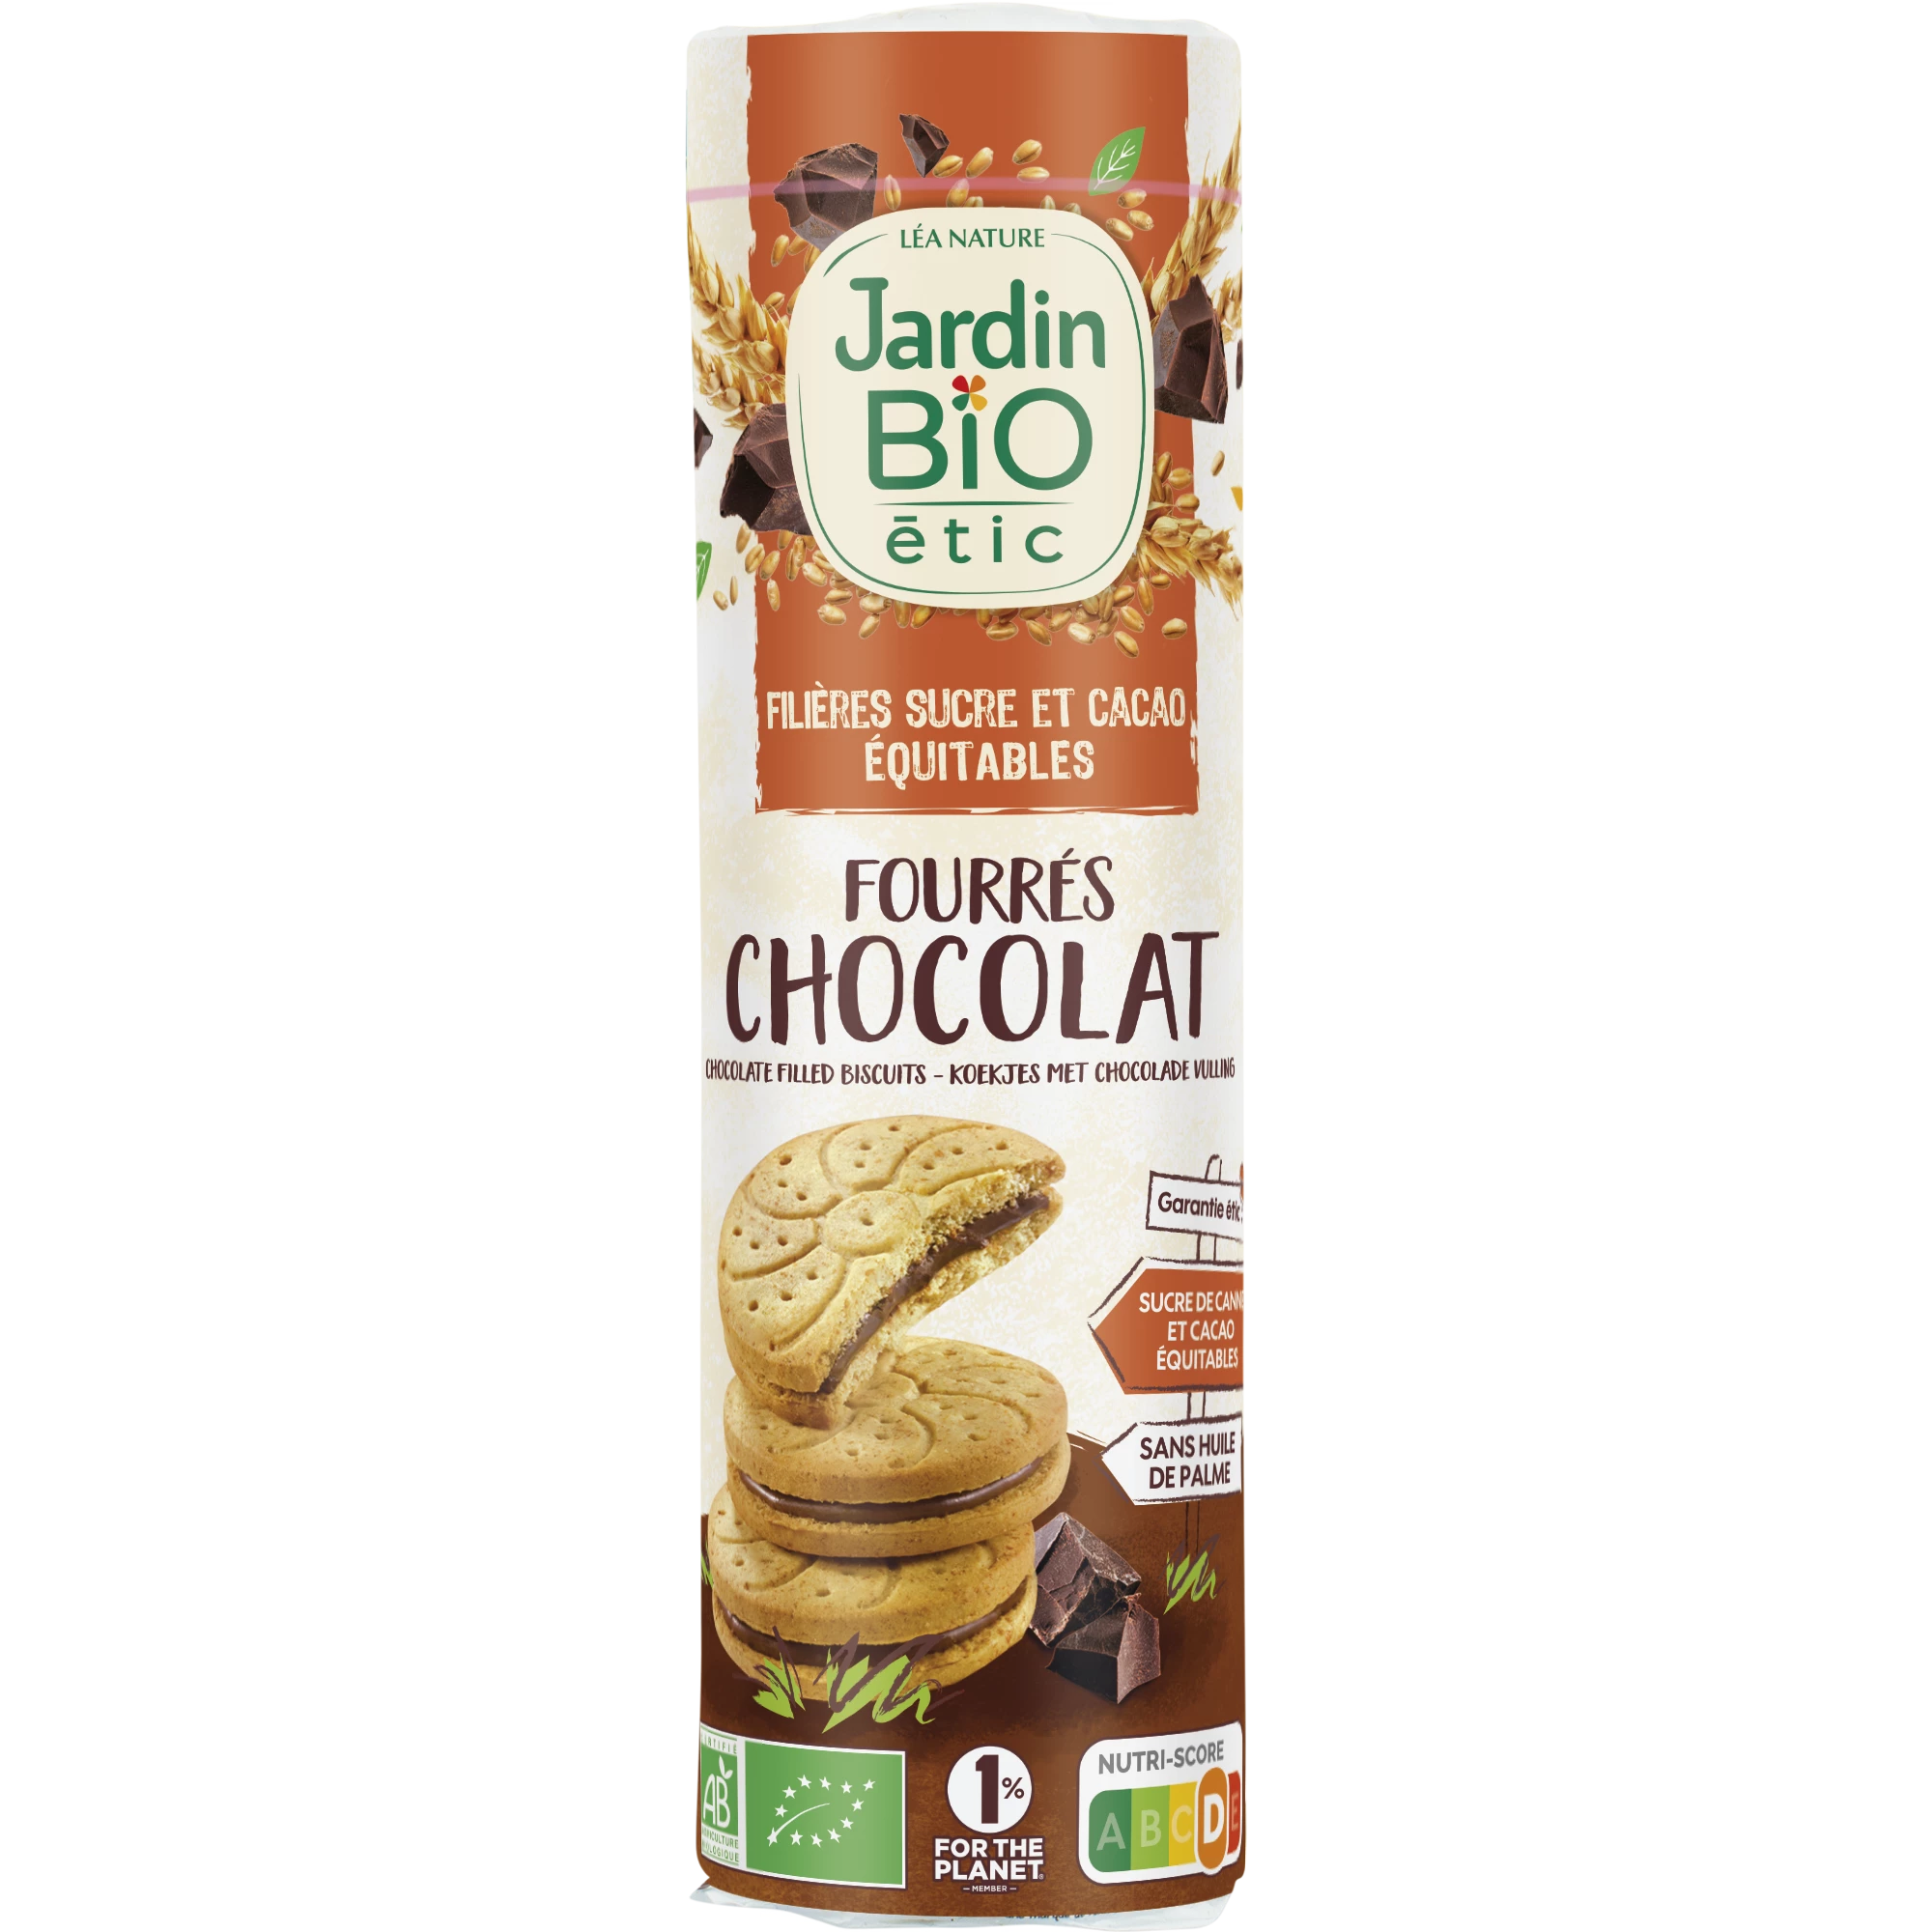 Печенье с шоколадной начинкой, 300г, JARDIN Bio ETIC